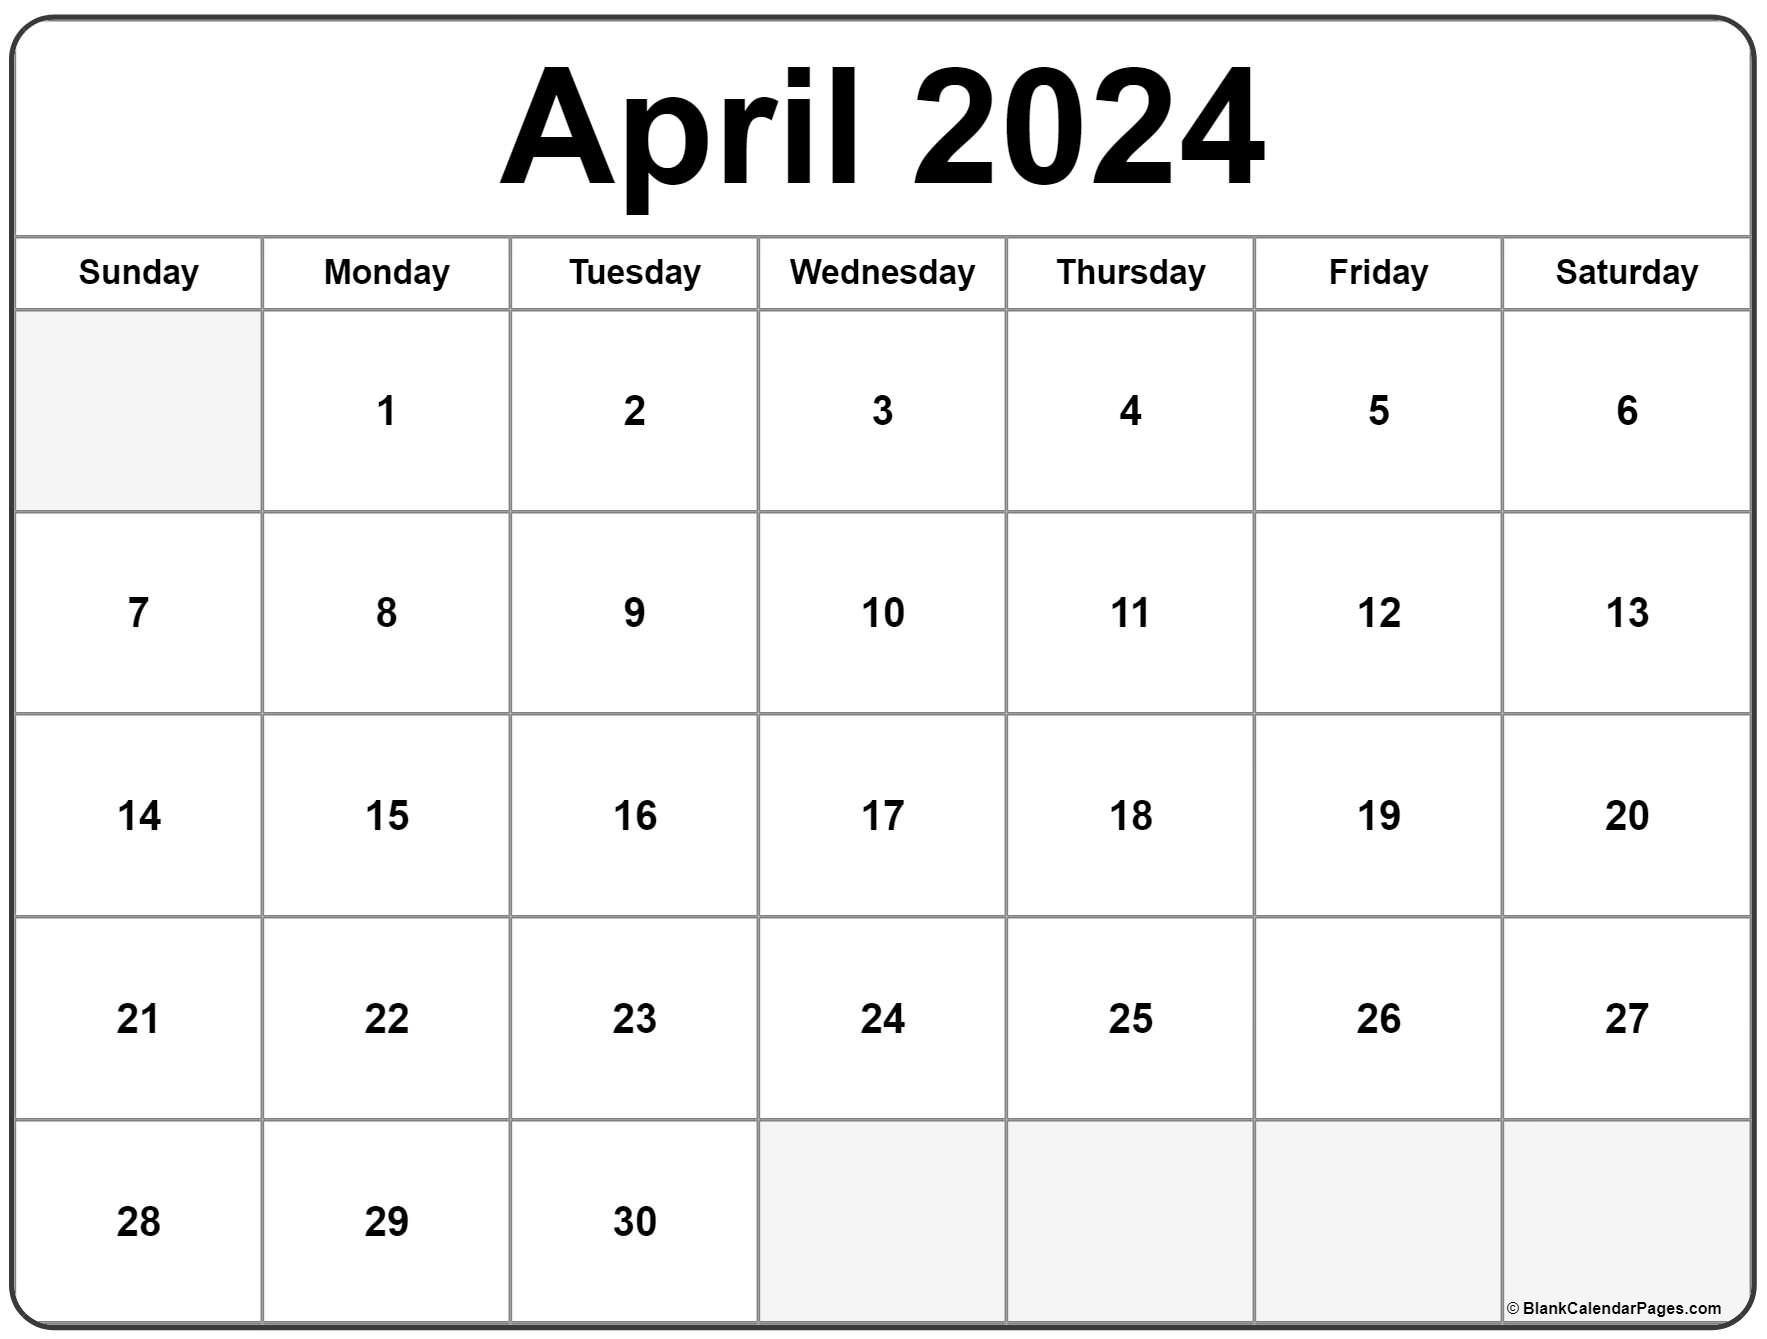 Atlanta Events April 2024 Calendar - Shaun Michelina